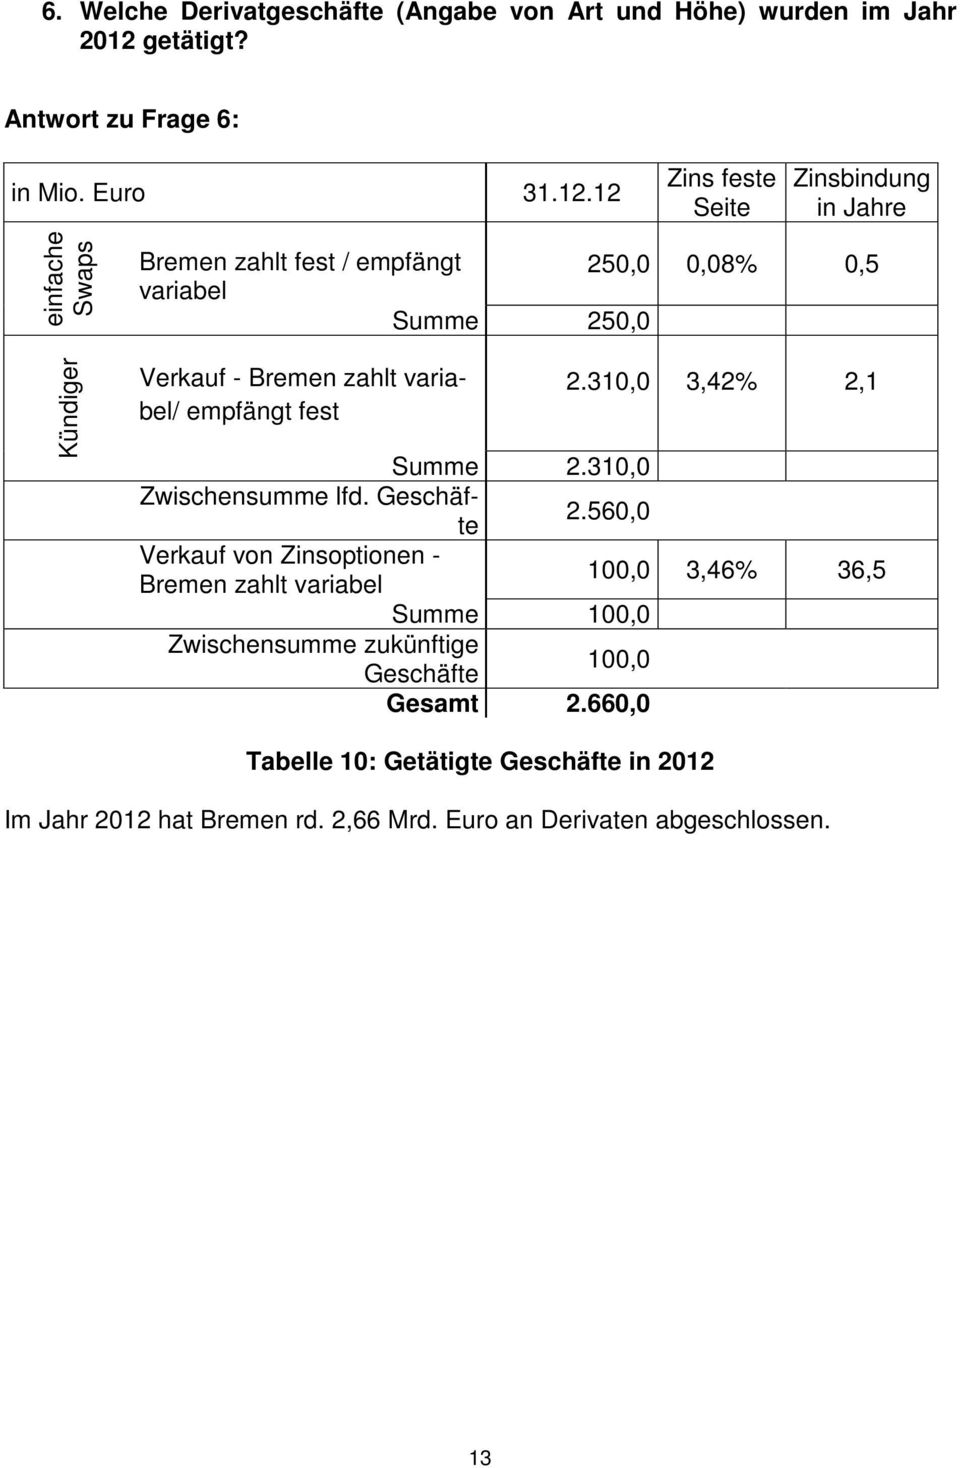 12 Zins feste Seite Zinsbindung in Jahre einfache Swaps Kündiger Bremen zahlt fest / empfängt 250,0 0,08% 0,5 variabel Summe 250,0 Verkauf - Bremen zahlt